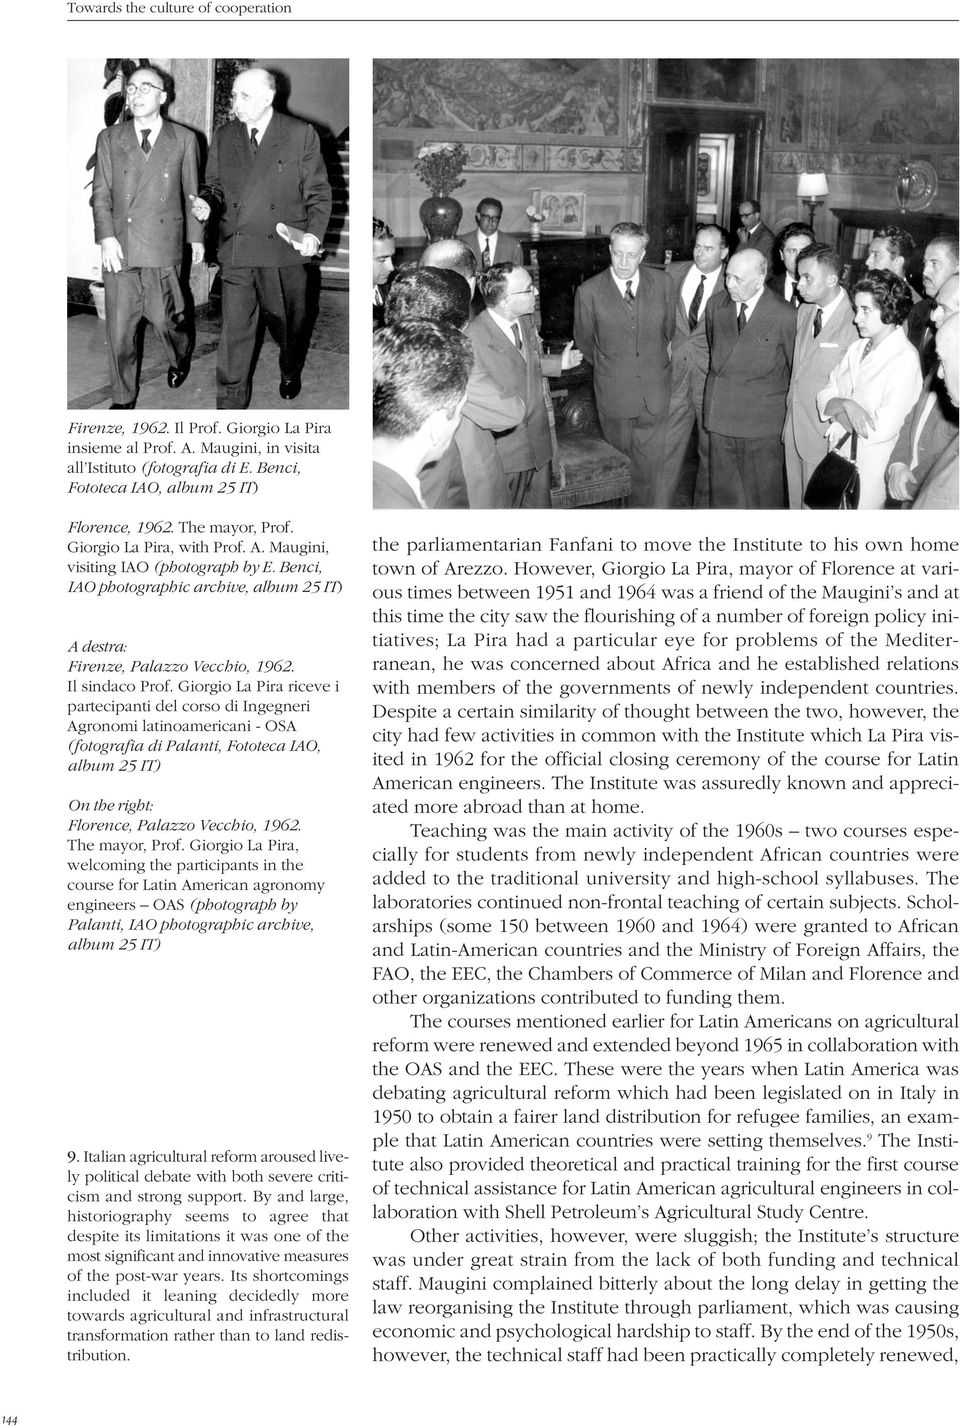 Giorgio La Pira riceve i partecipanti del corso di Ingegneri Agronomi latinoamericani - OSA (fotografia di Palanti, Fototeca IAO, album 25 IT) On the right: Florence, Palazzo Vecchio, 1962.